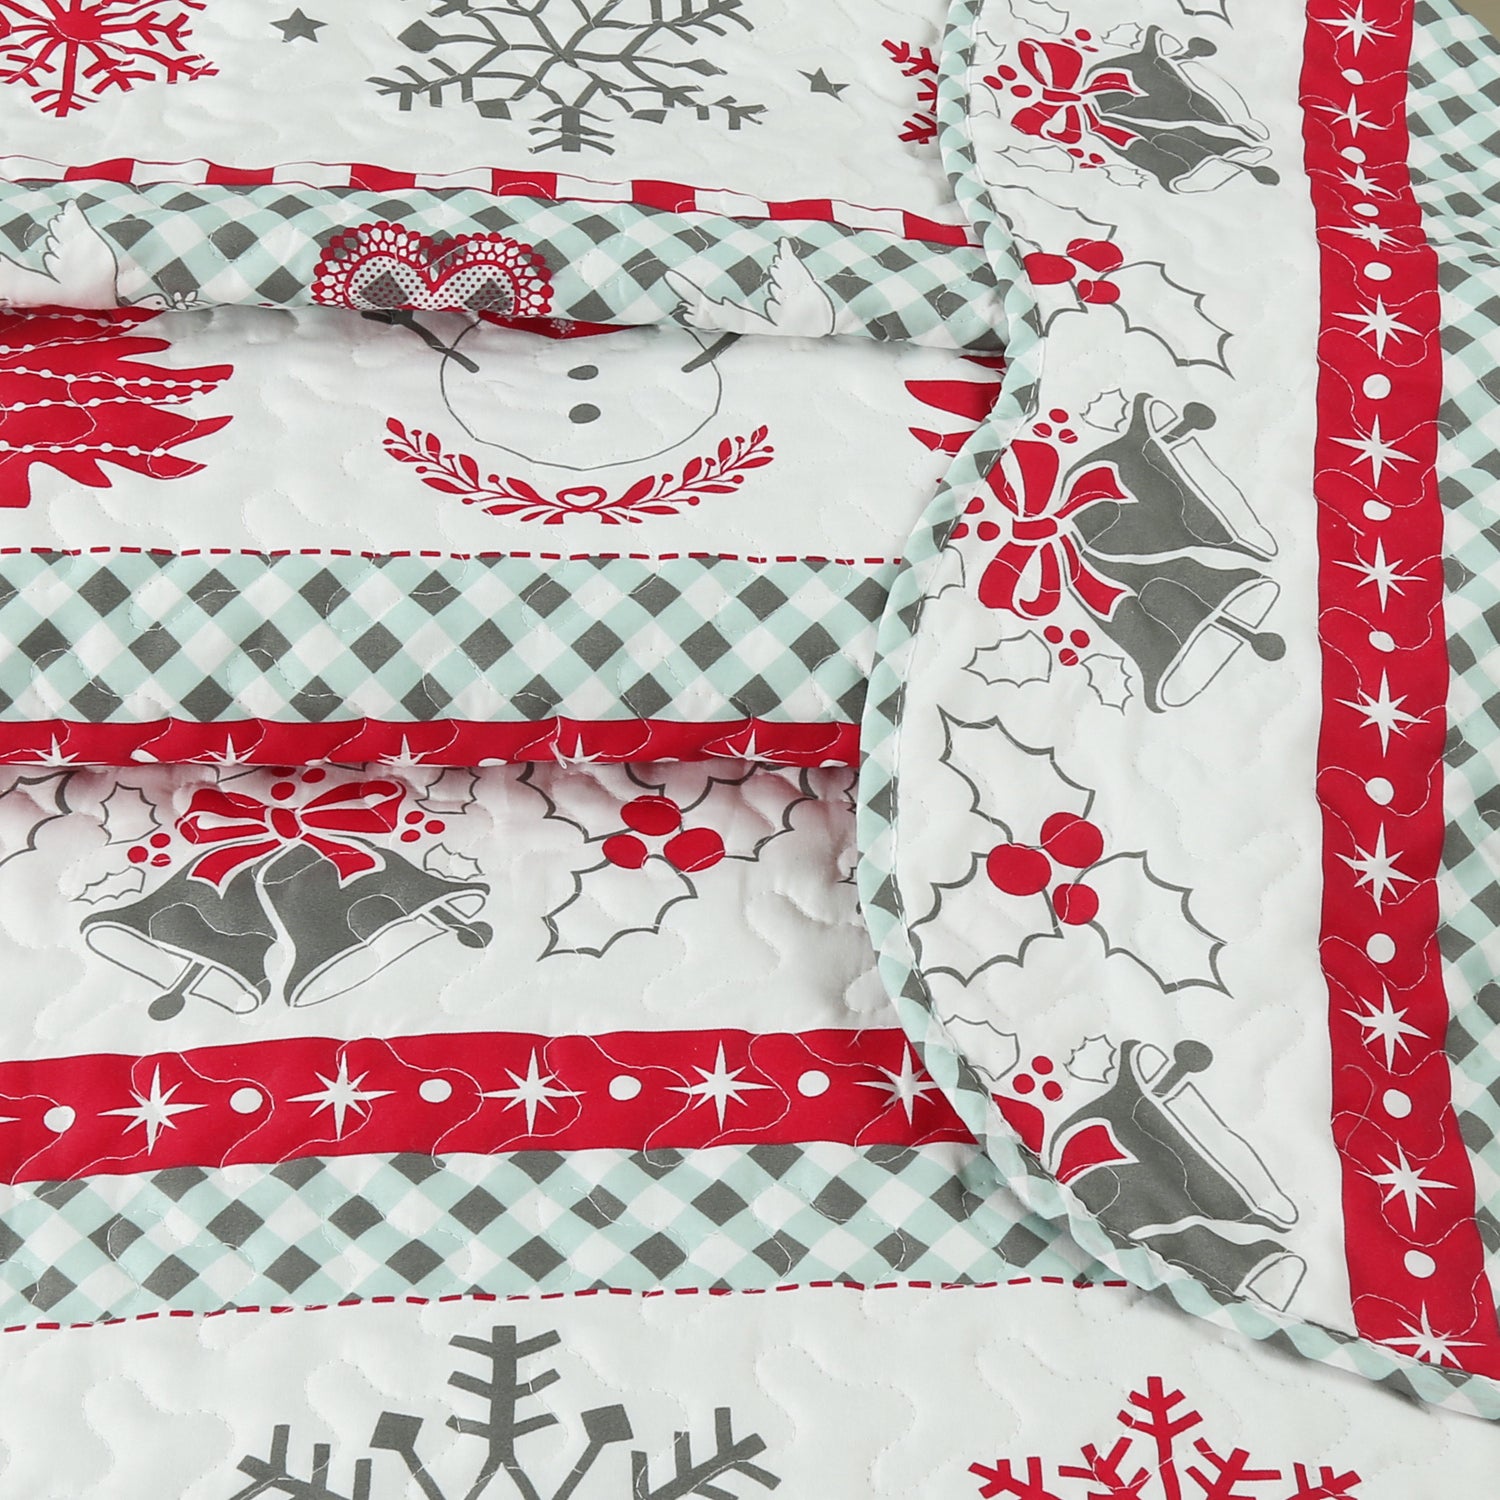 3 Pcs Christmas Quilt Bedspread Set C89